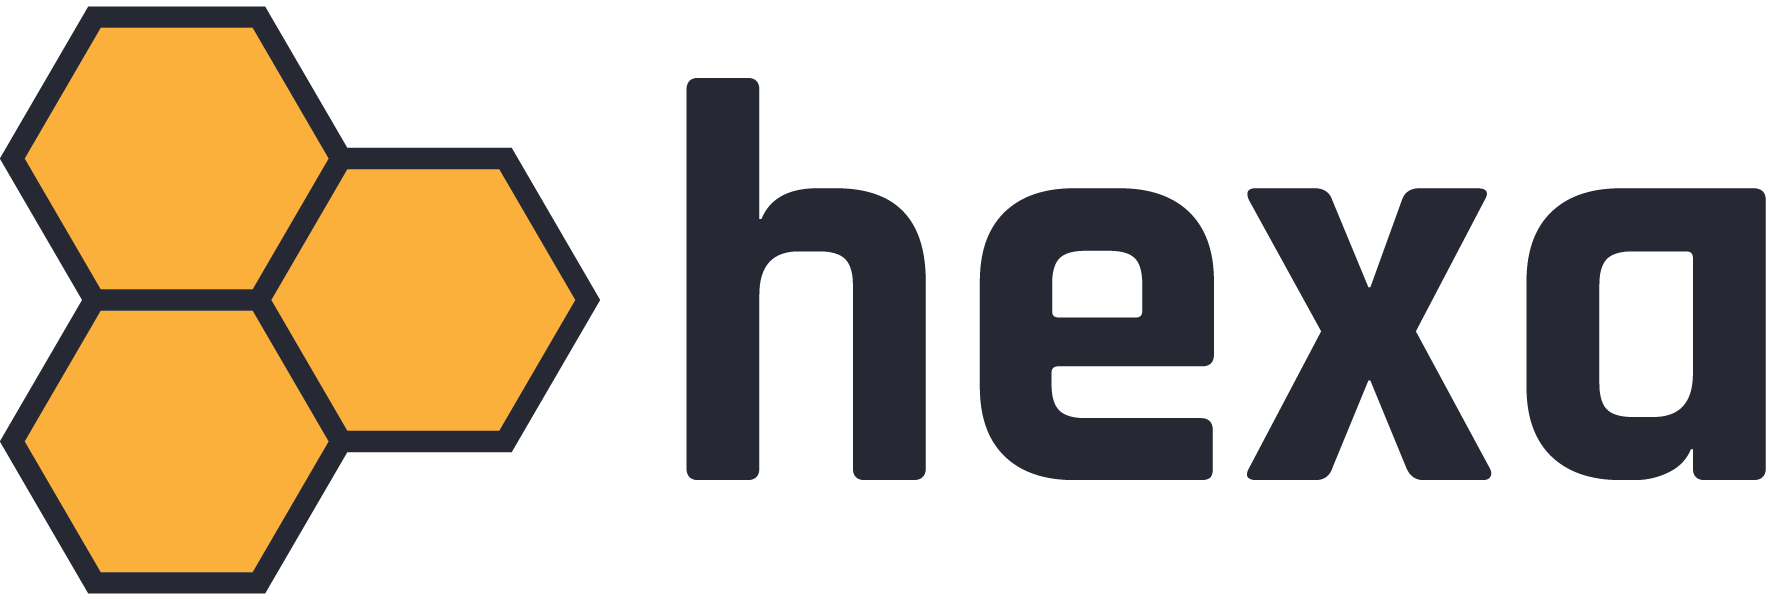 hexa-1